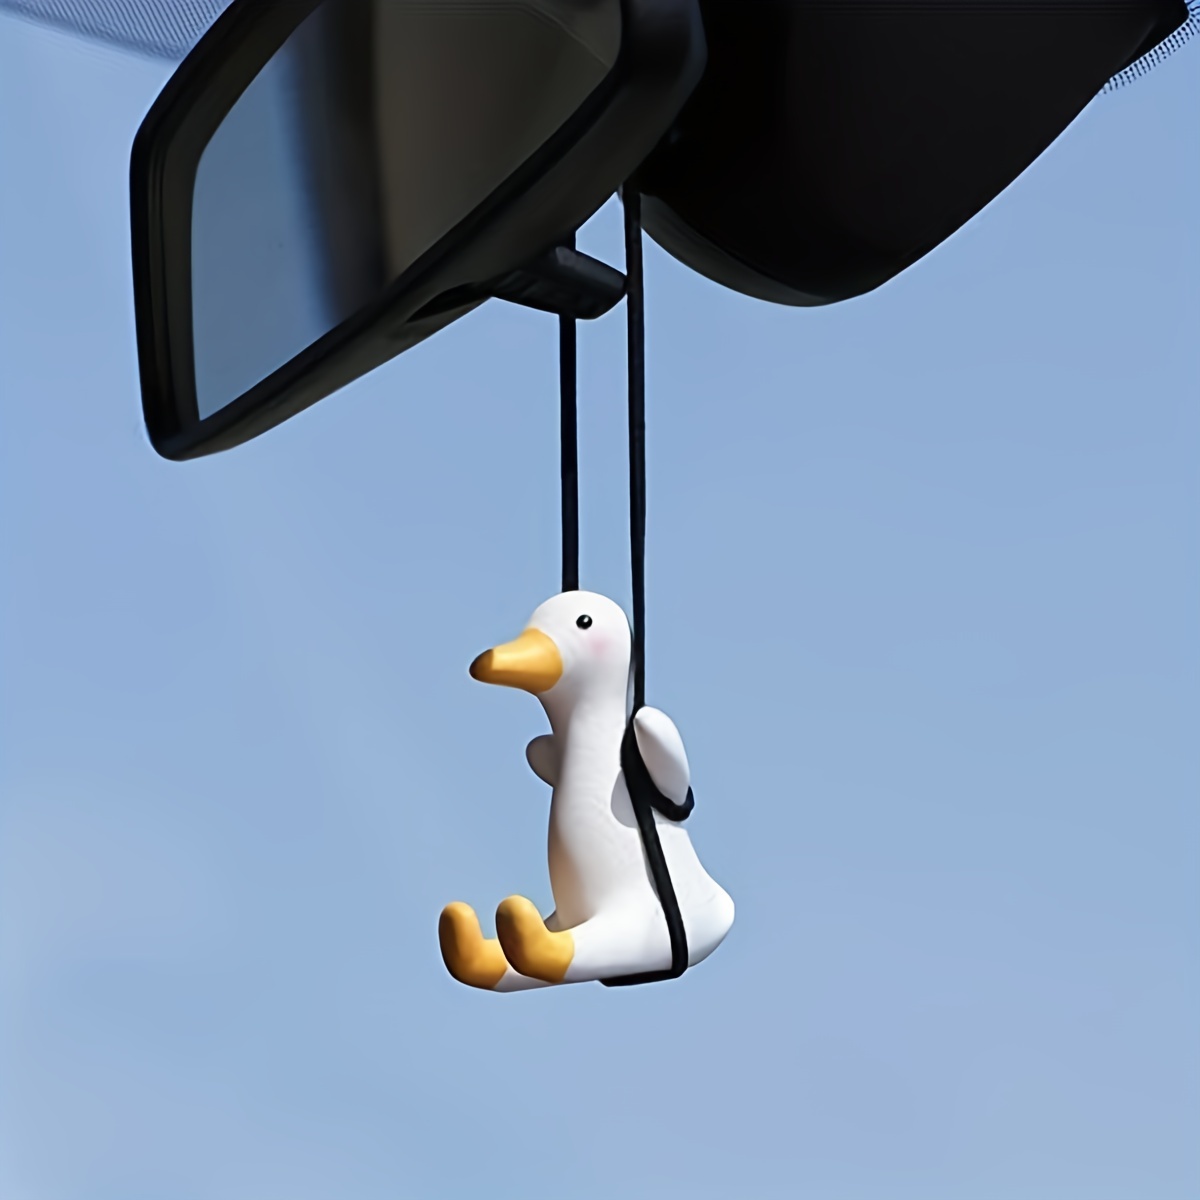 Schwingende Ente Hanging Ornament, SüßE Schaukel Ente auf Auto